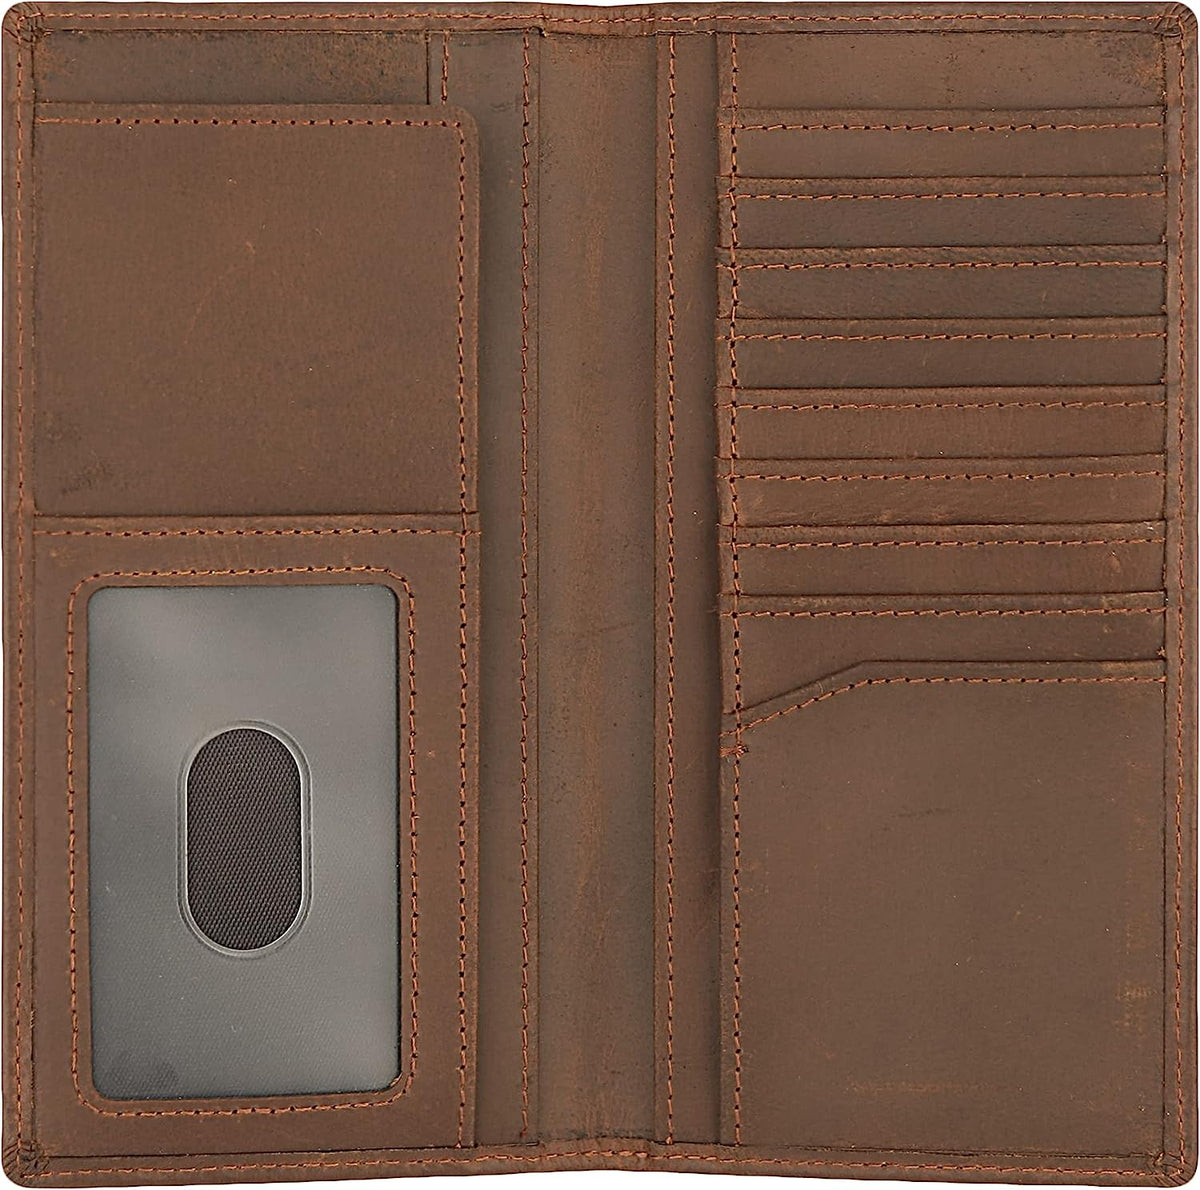 Genuine Leather Bifold Wallet Long Wallets